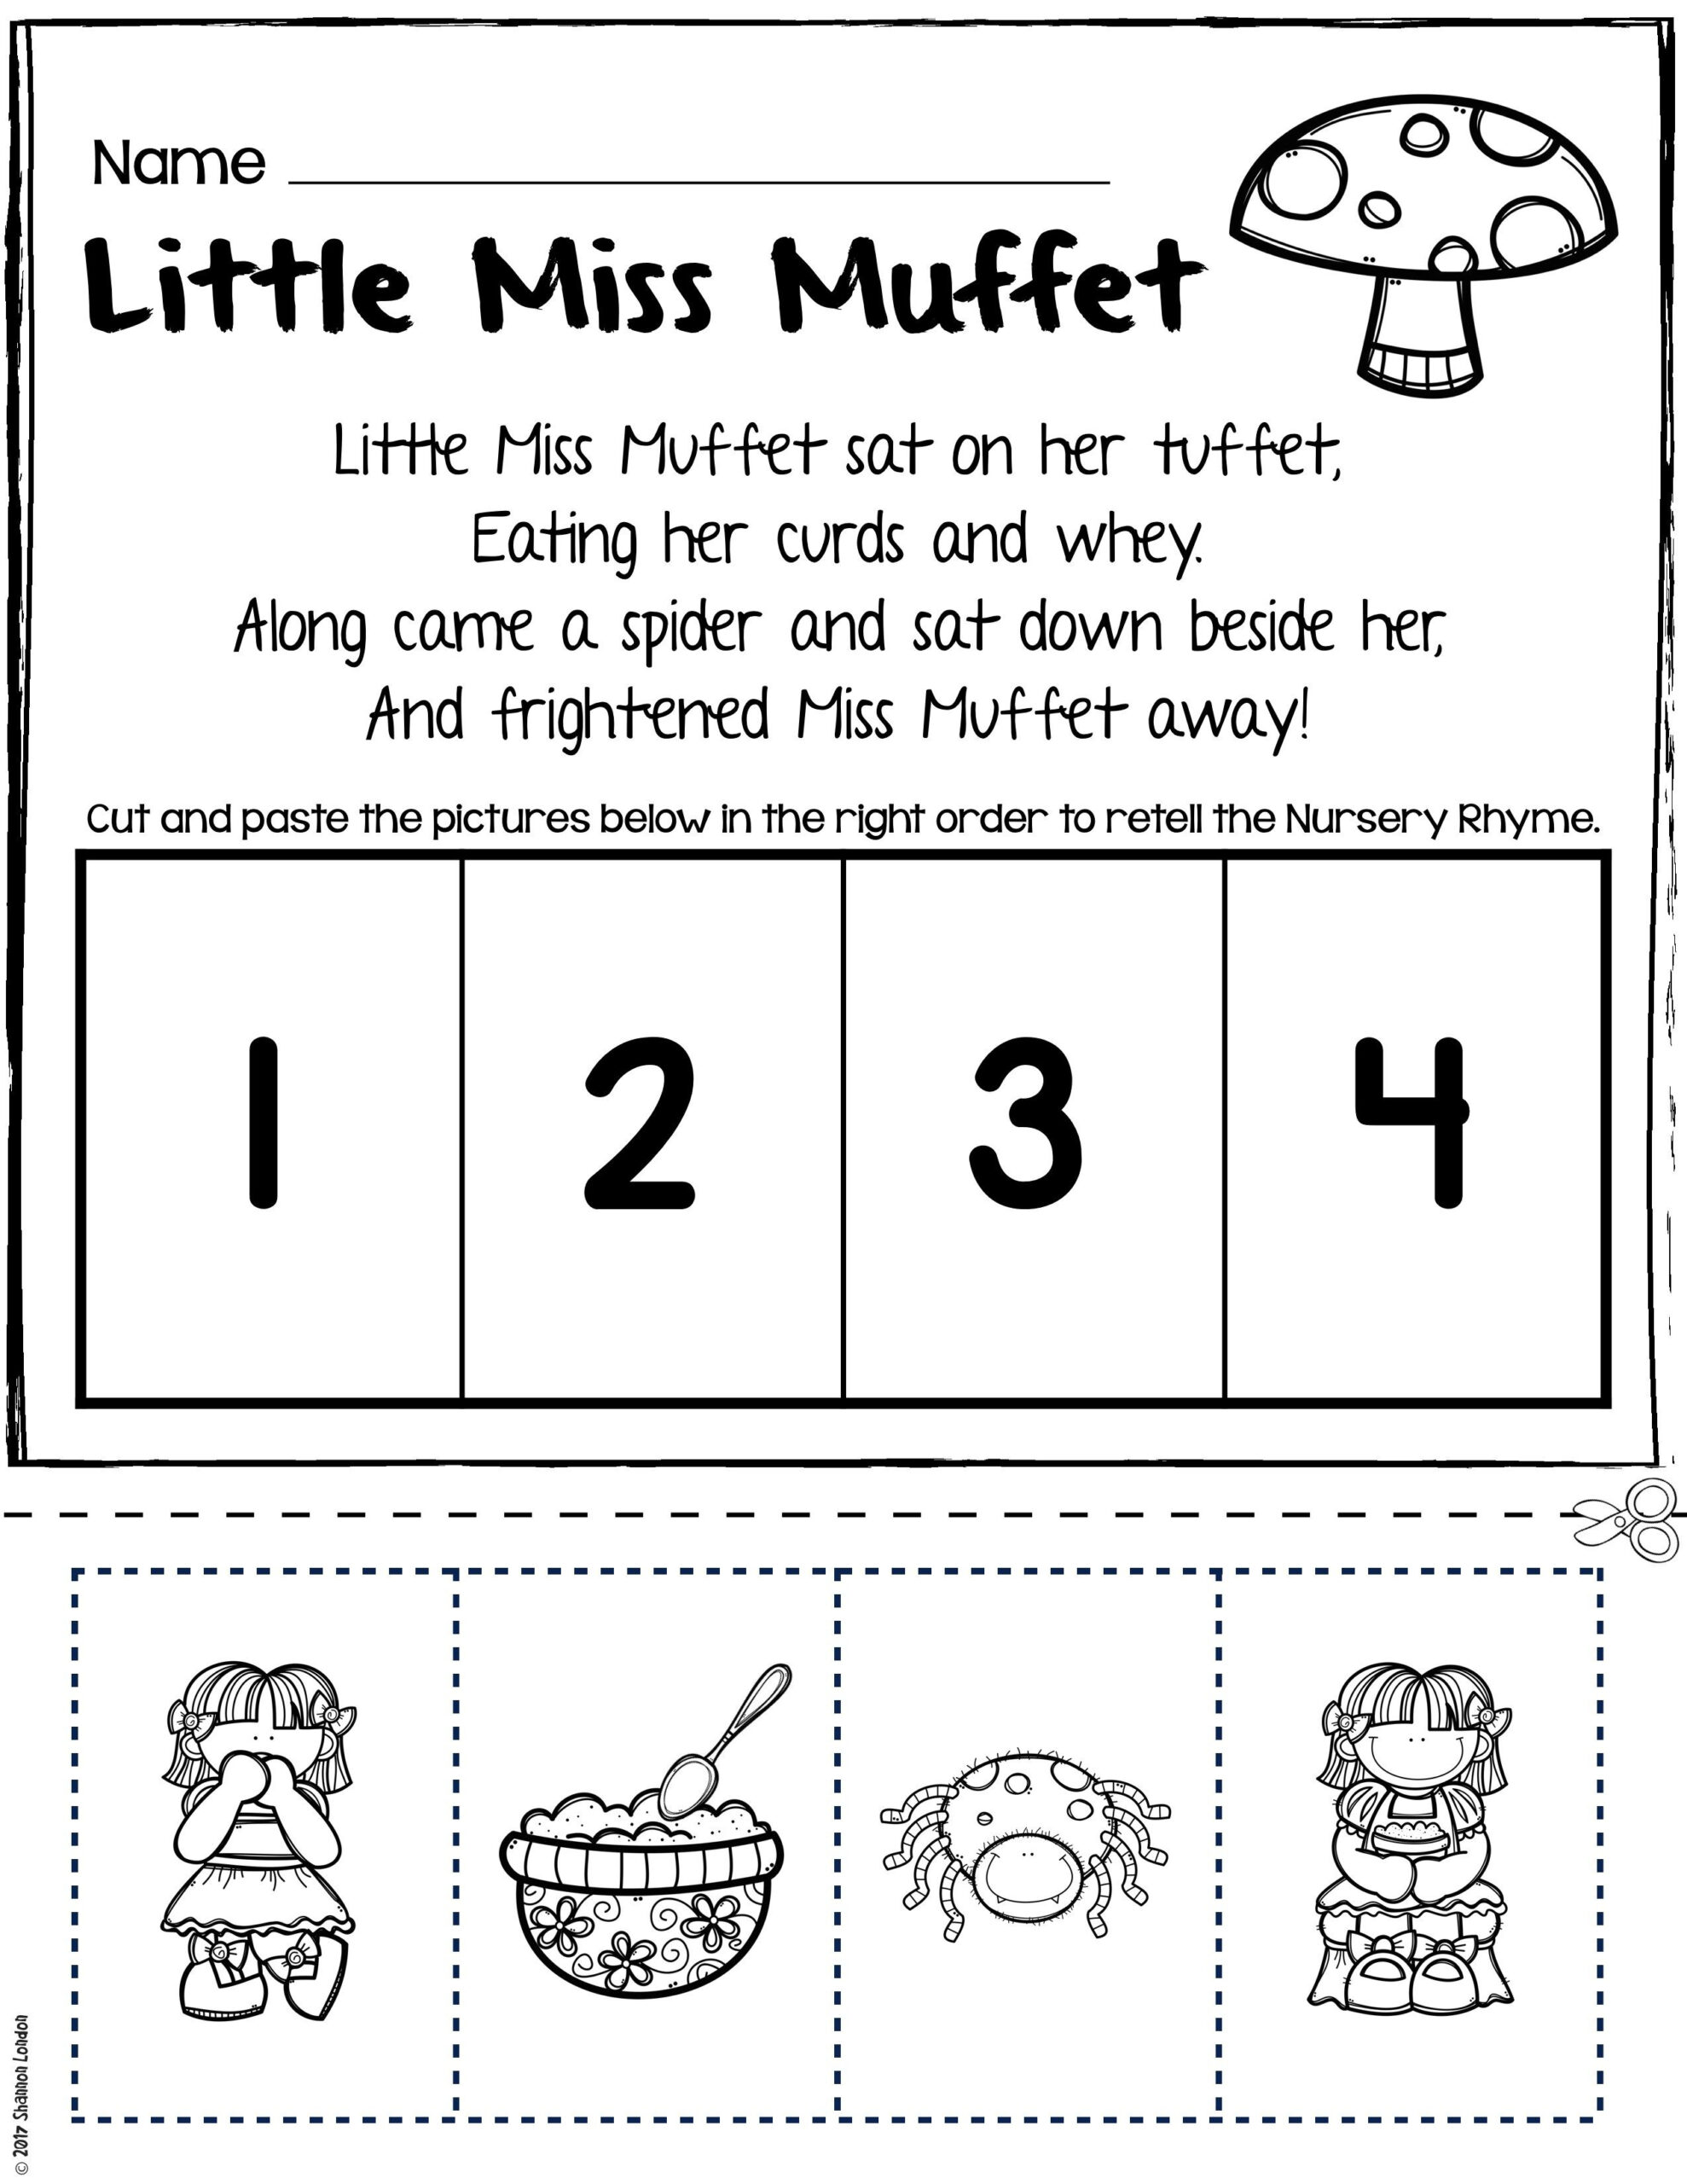 Teach Story Retelling With Nursery Rhymes Nursery Rhymes Activities 